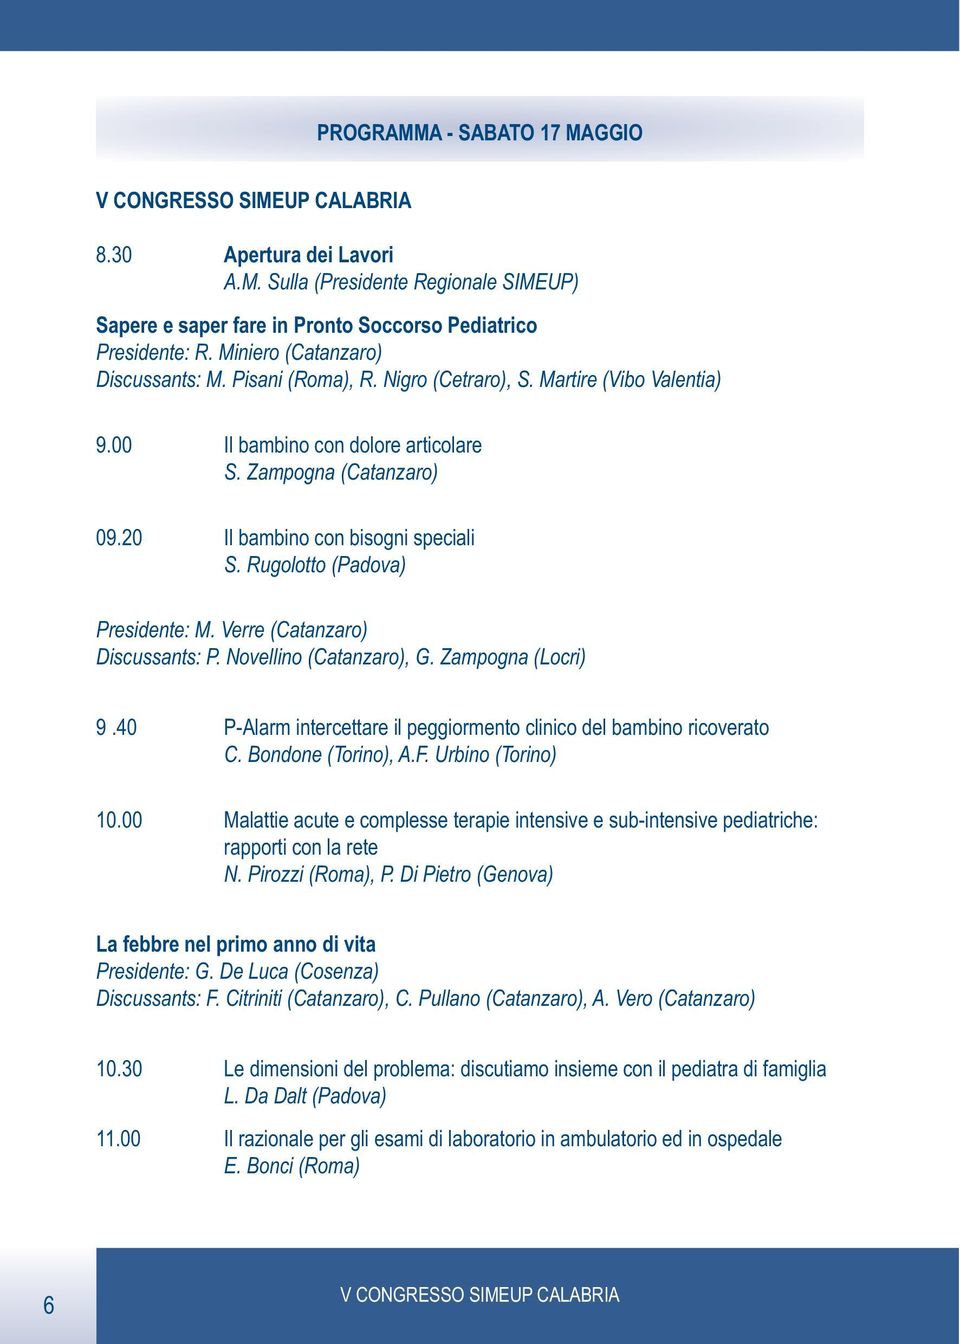 Rugolotto (Padova) Presidente: M. Verre (Catanzaro) Discussants: P. Novellino (Catanzaro), G. Zampogna (Locri) 9.40 P-Alarm intercettare il peggiormento clinico del bambino ricoverato C.